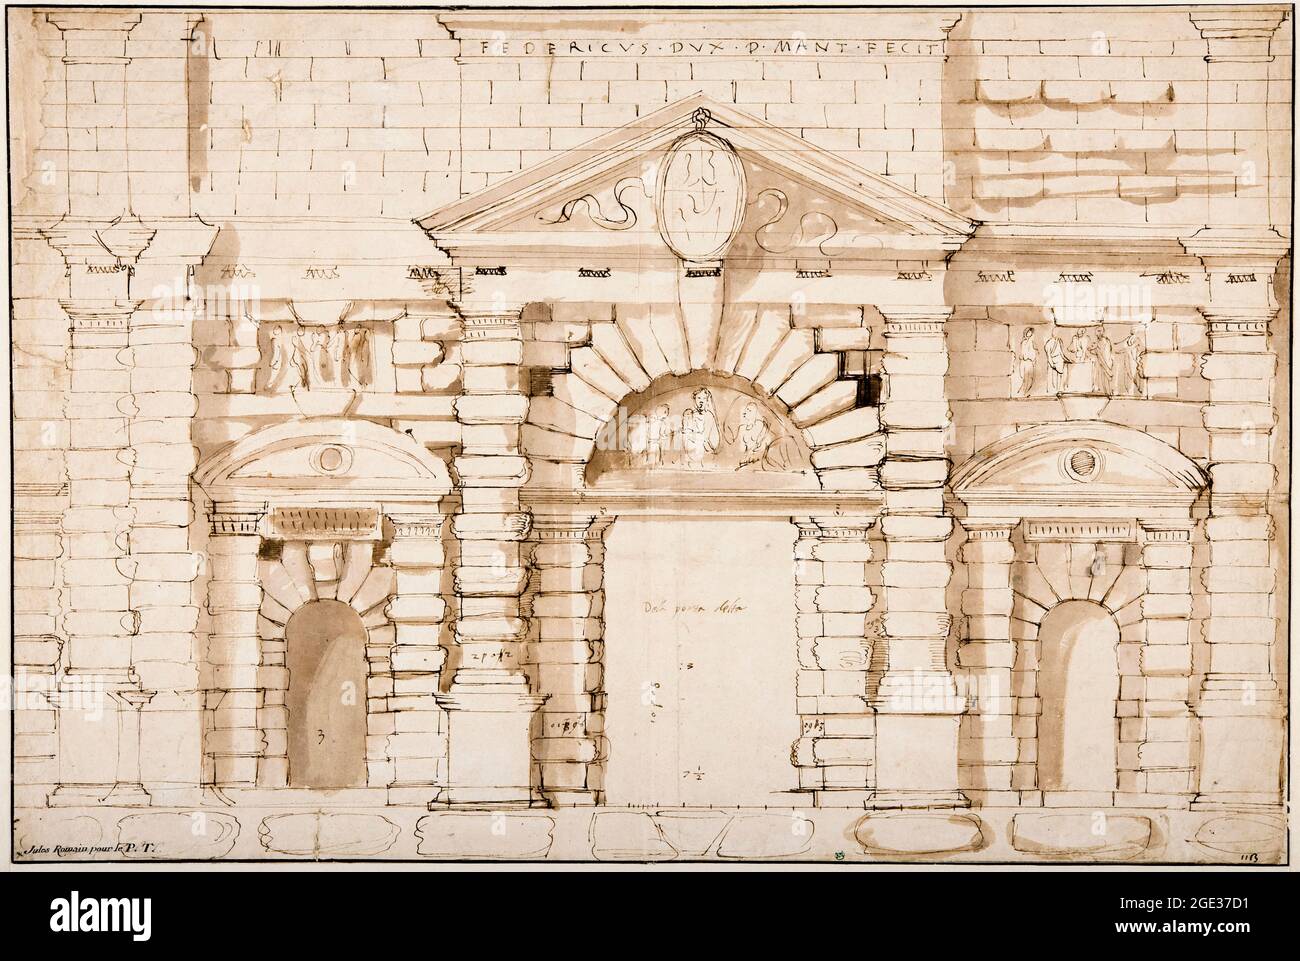 Giulio Romano (Giulio Pippi), Project for the Porta del Te in Mantua, drawing, 1530-1536 Stock Photo